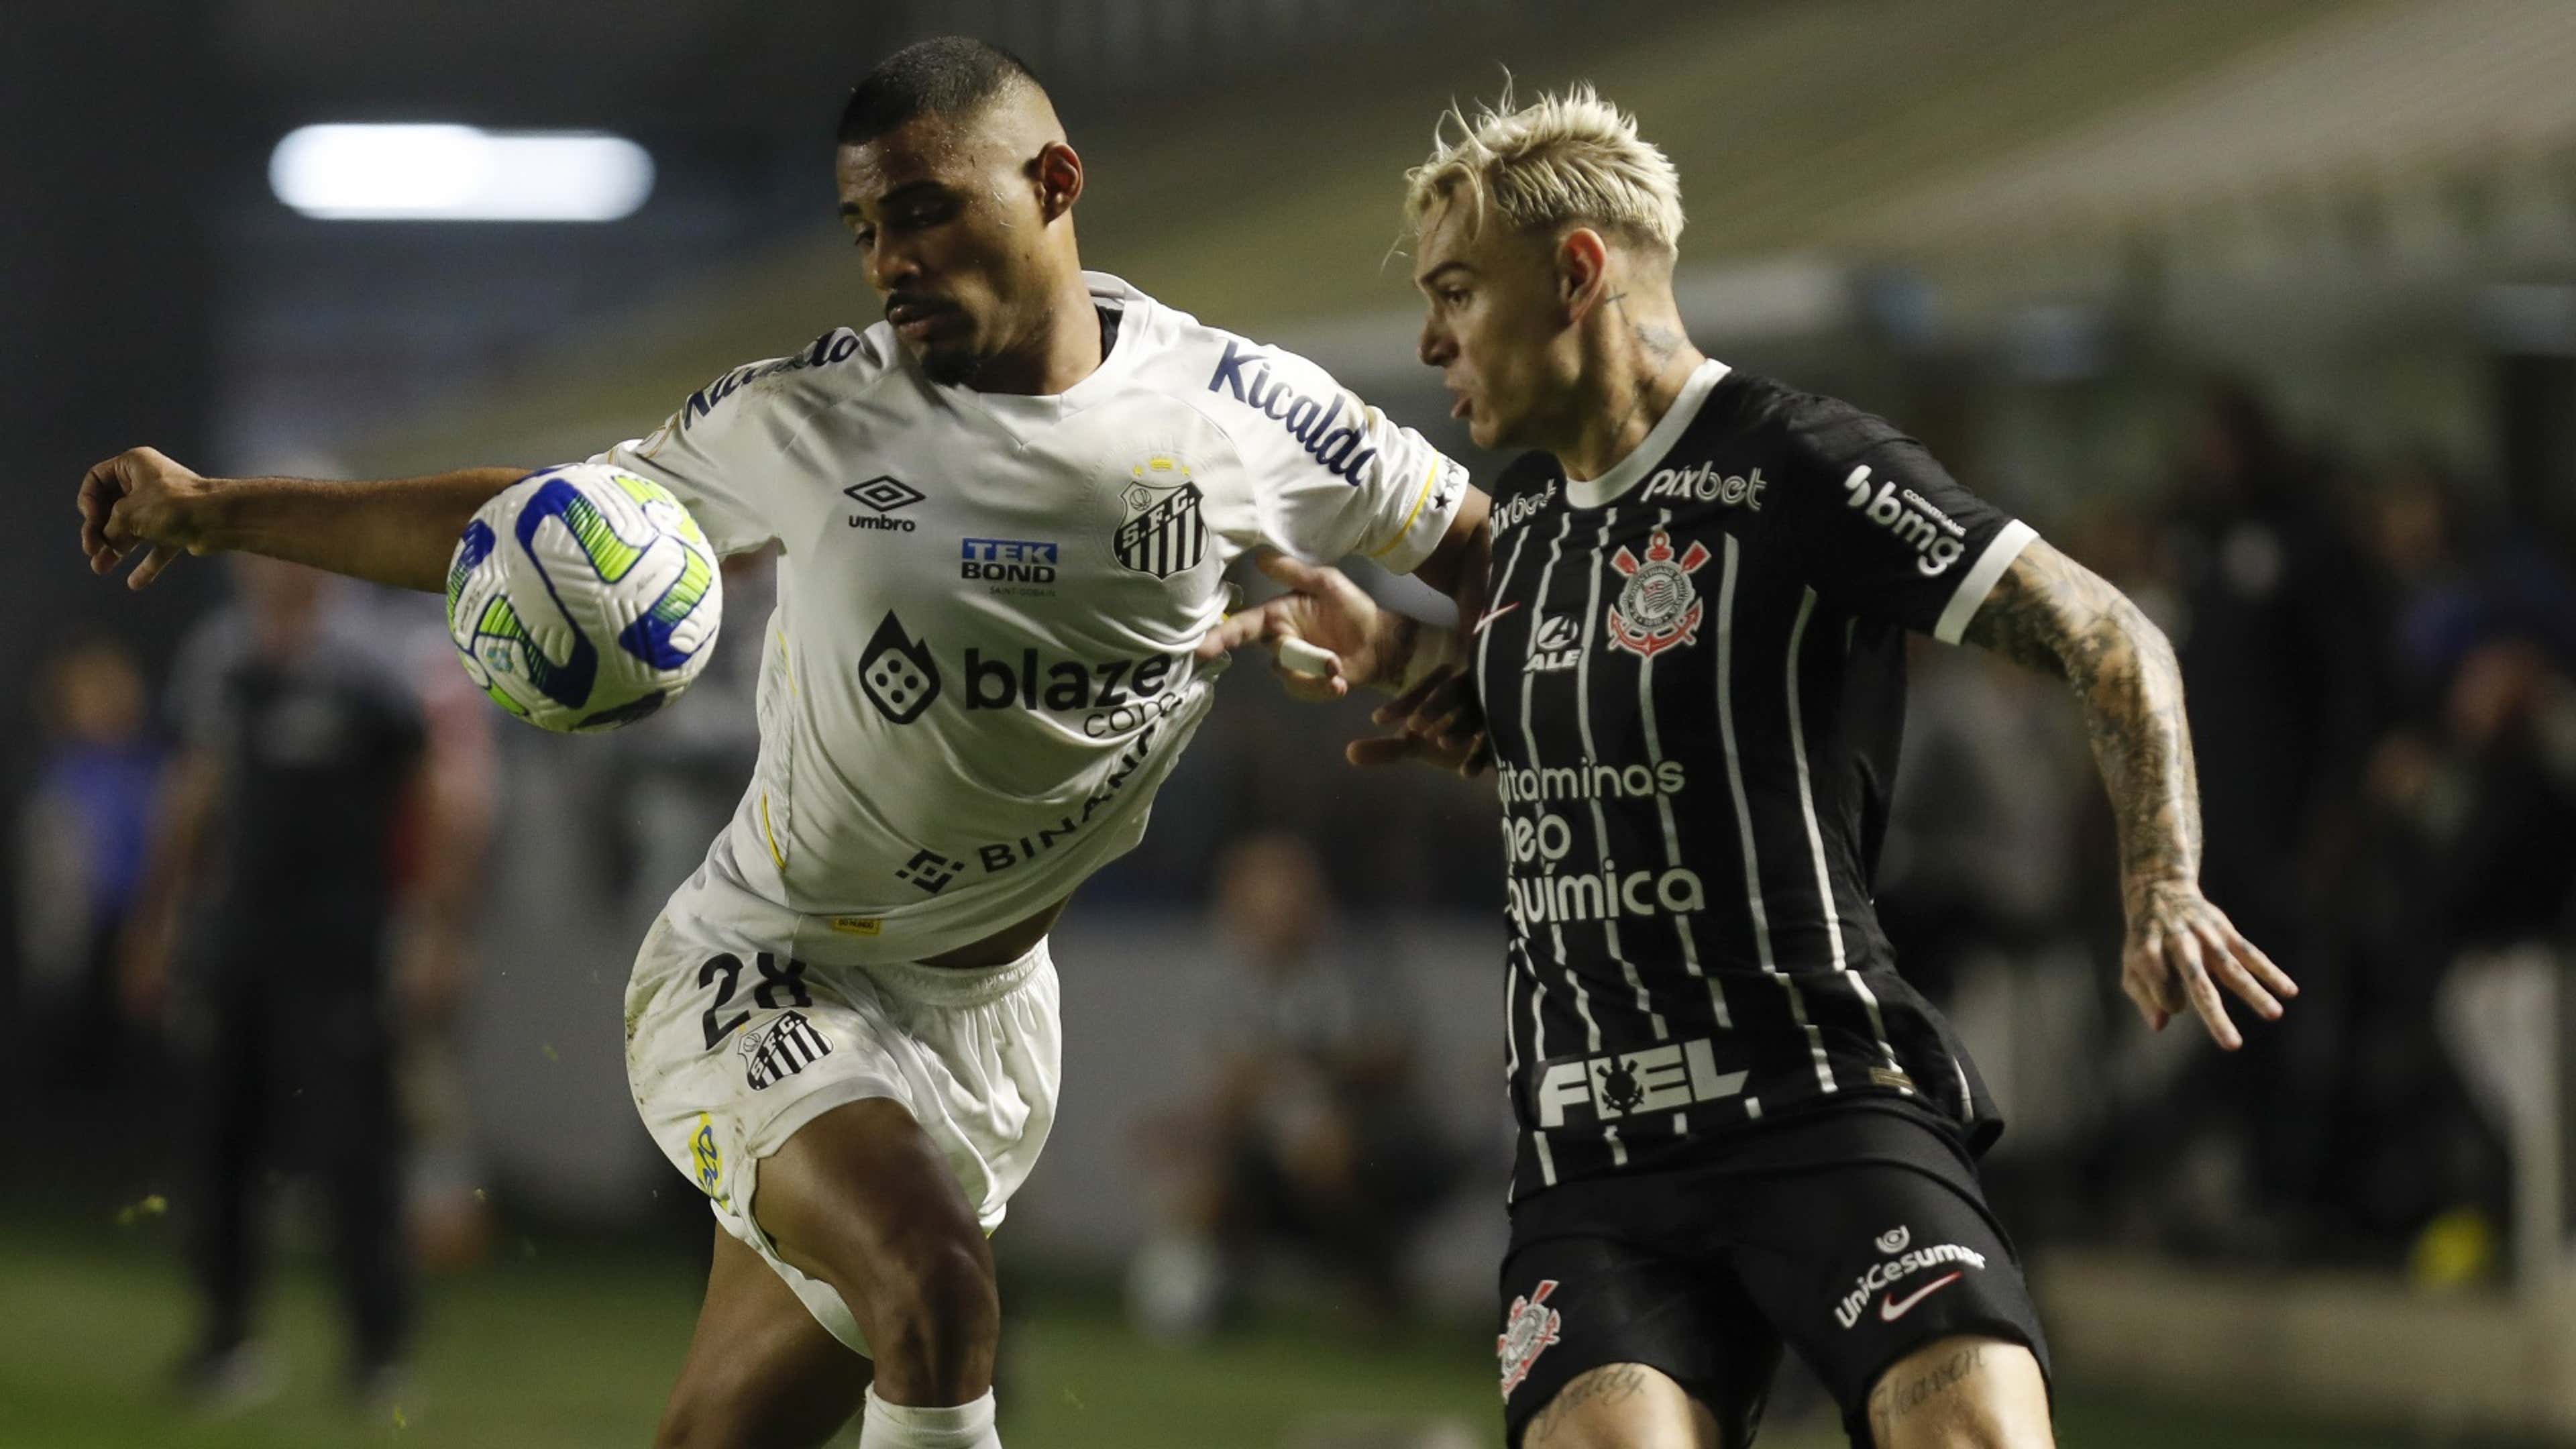 Rodada do Brasileirão tem jogos de Palmeiras, Corinthians e Santos